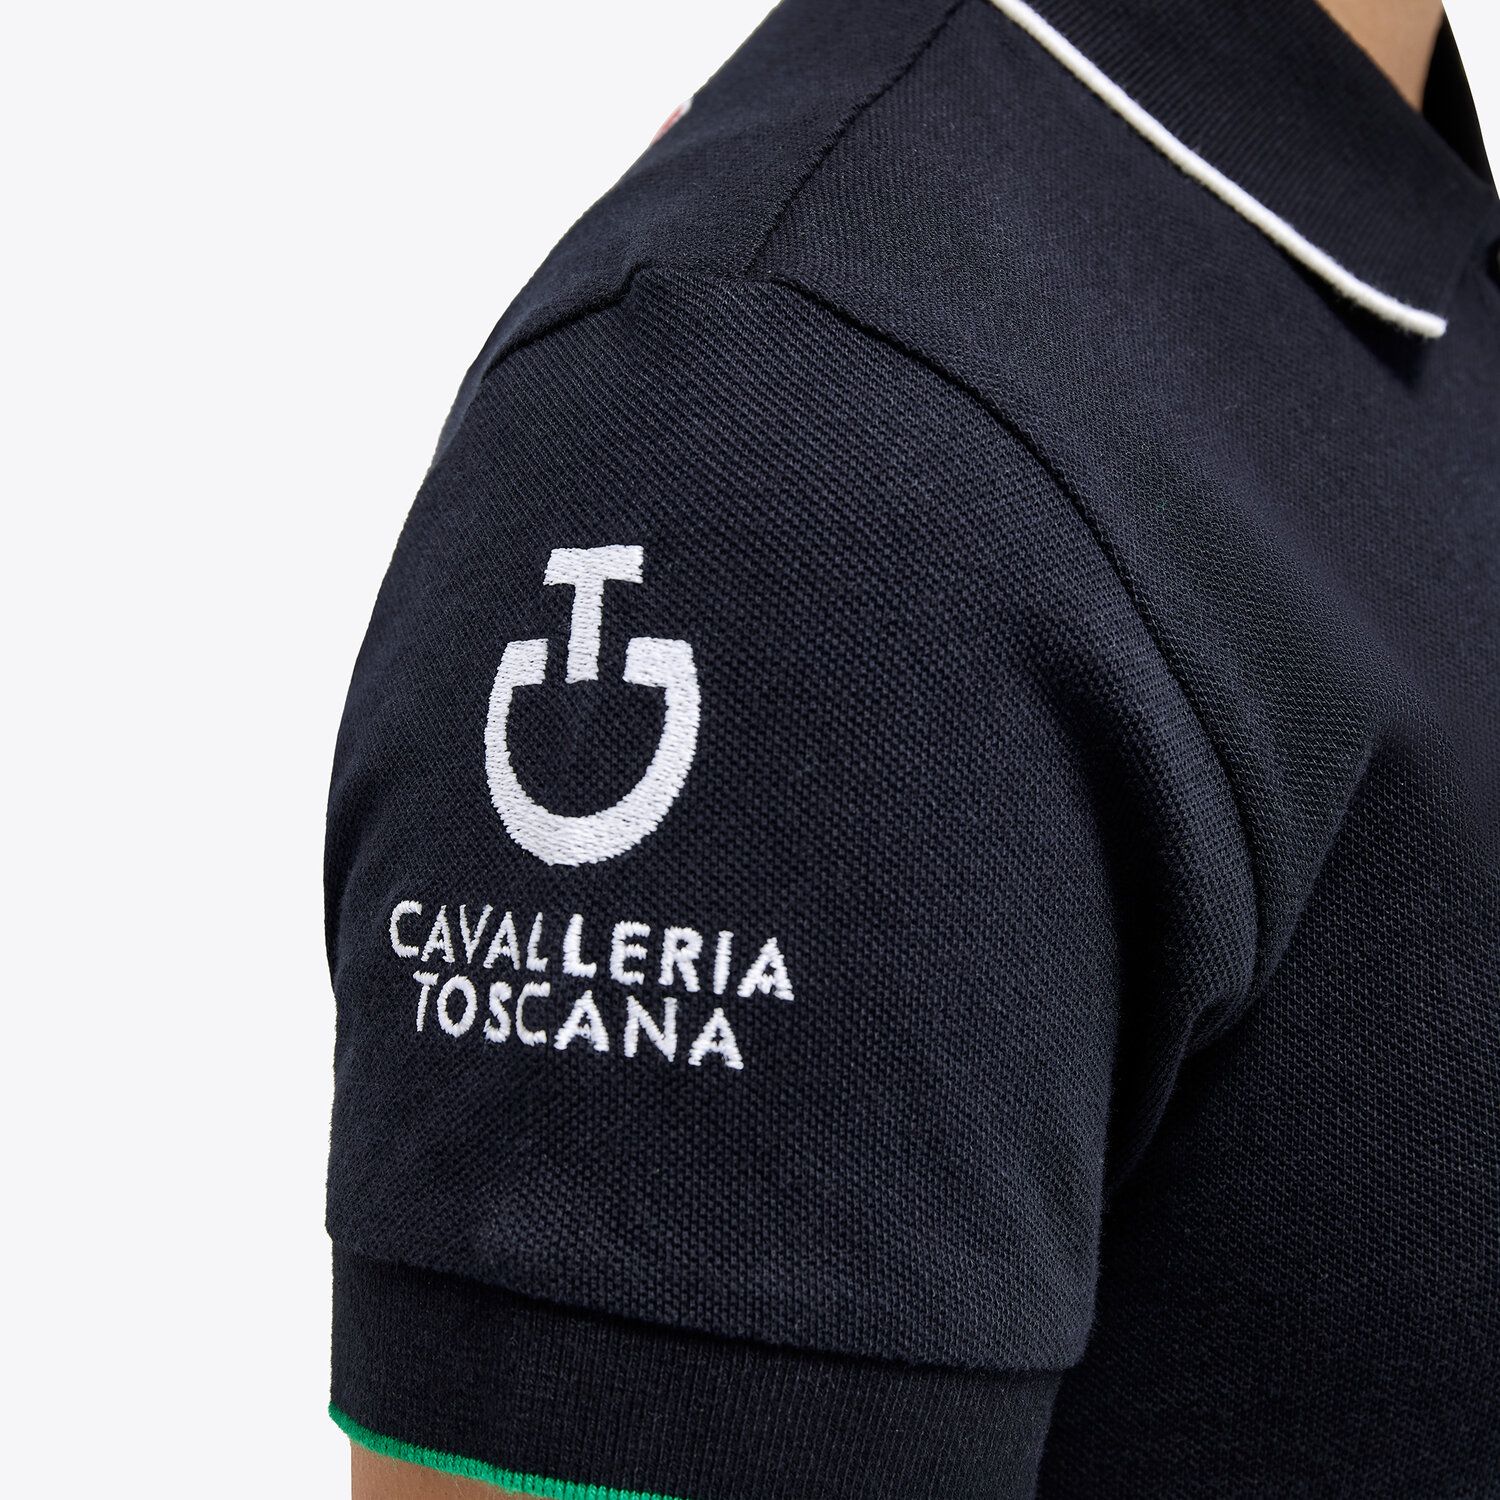 Cavalleria Toscana FISE polo shirt for girls in piqué cotton NAVY-4